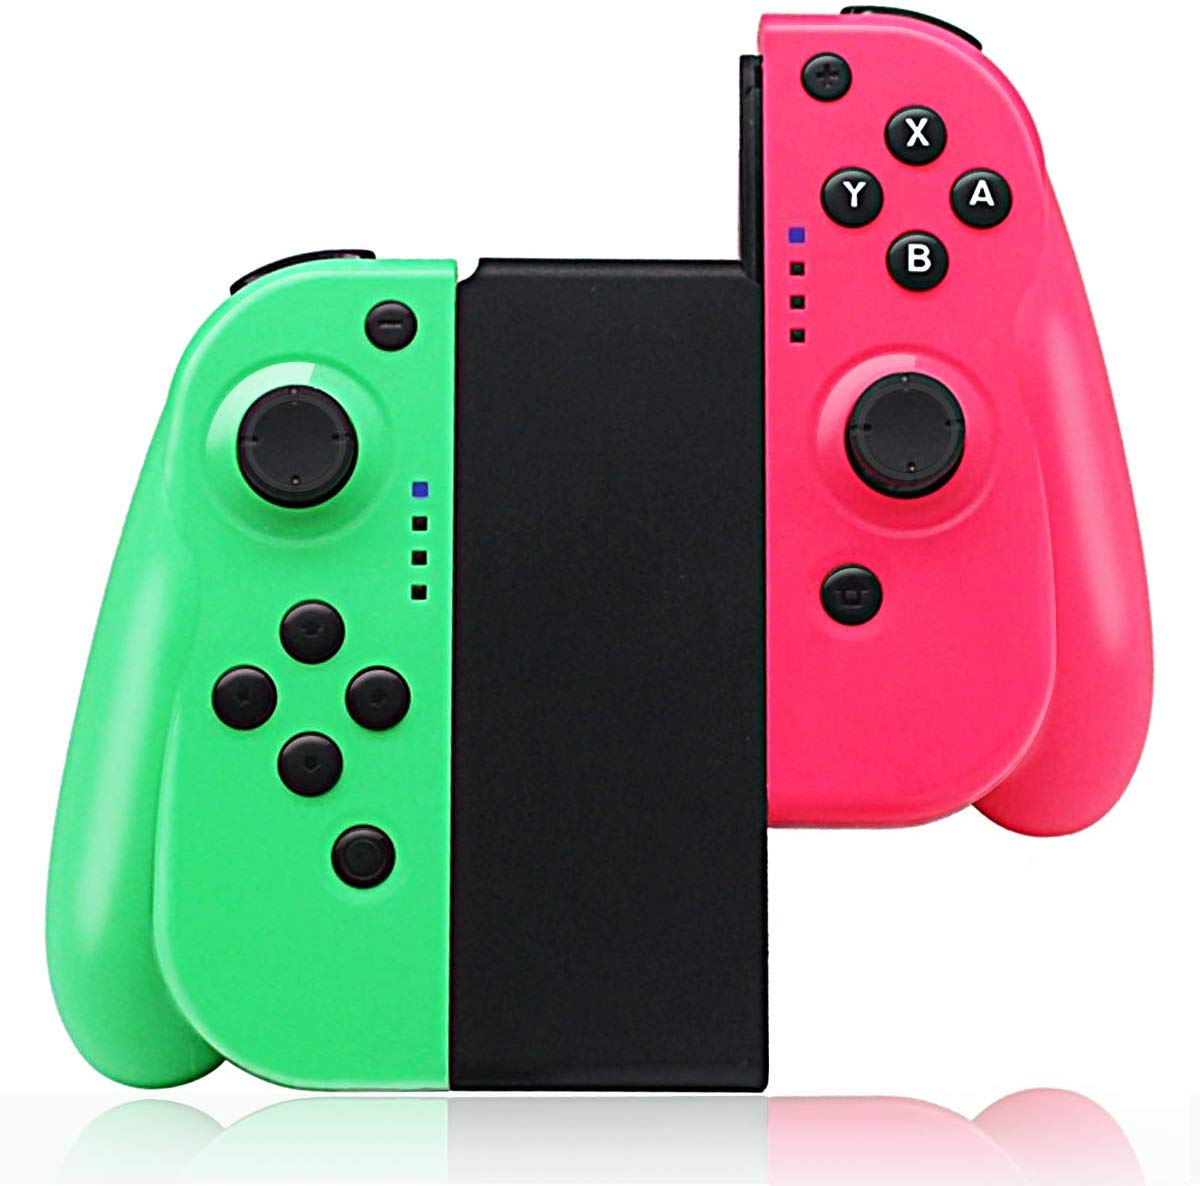 だま屋 / スイッチ Nintendo switch ジョイコン Joy-Con互換 グリーン ピンク グリップ付き ワイヤレス 振動